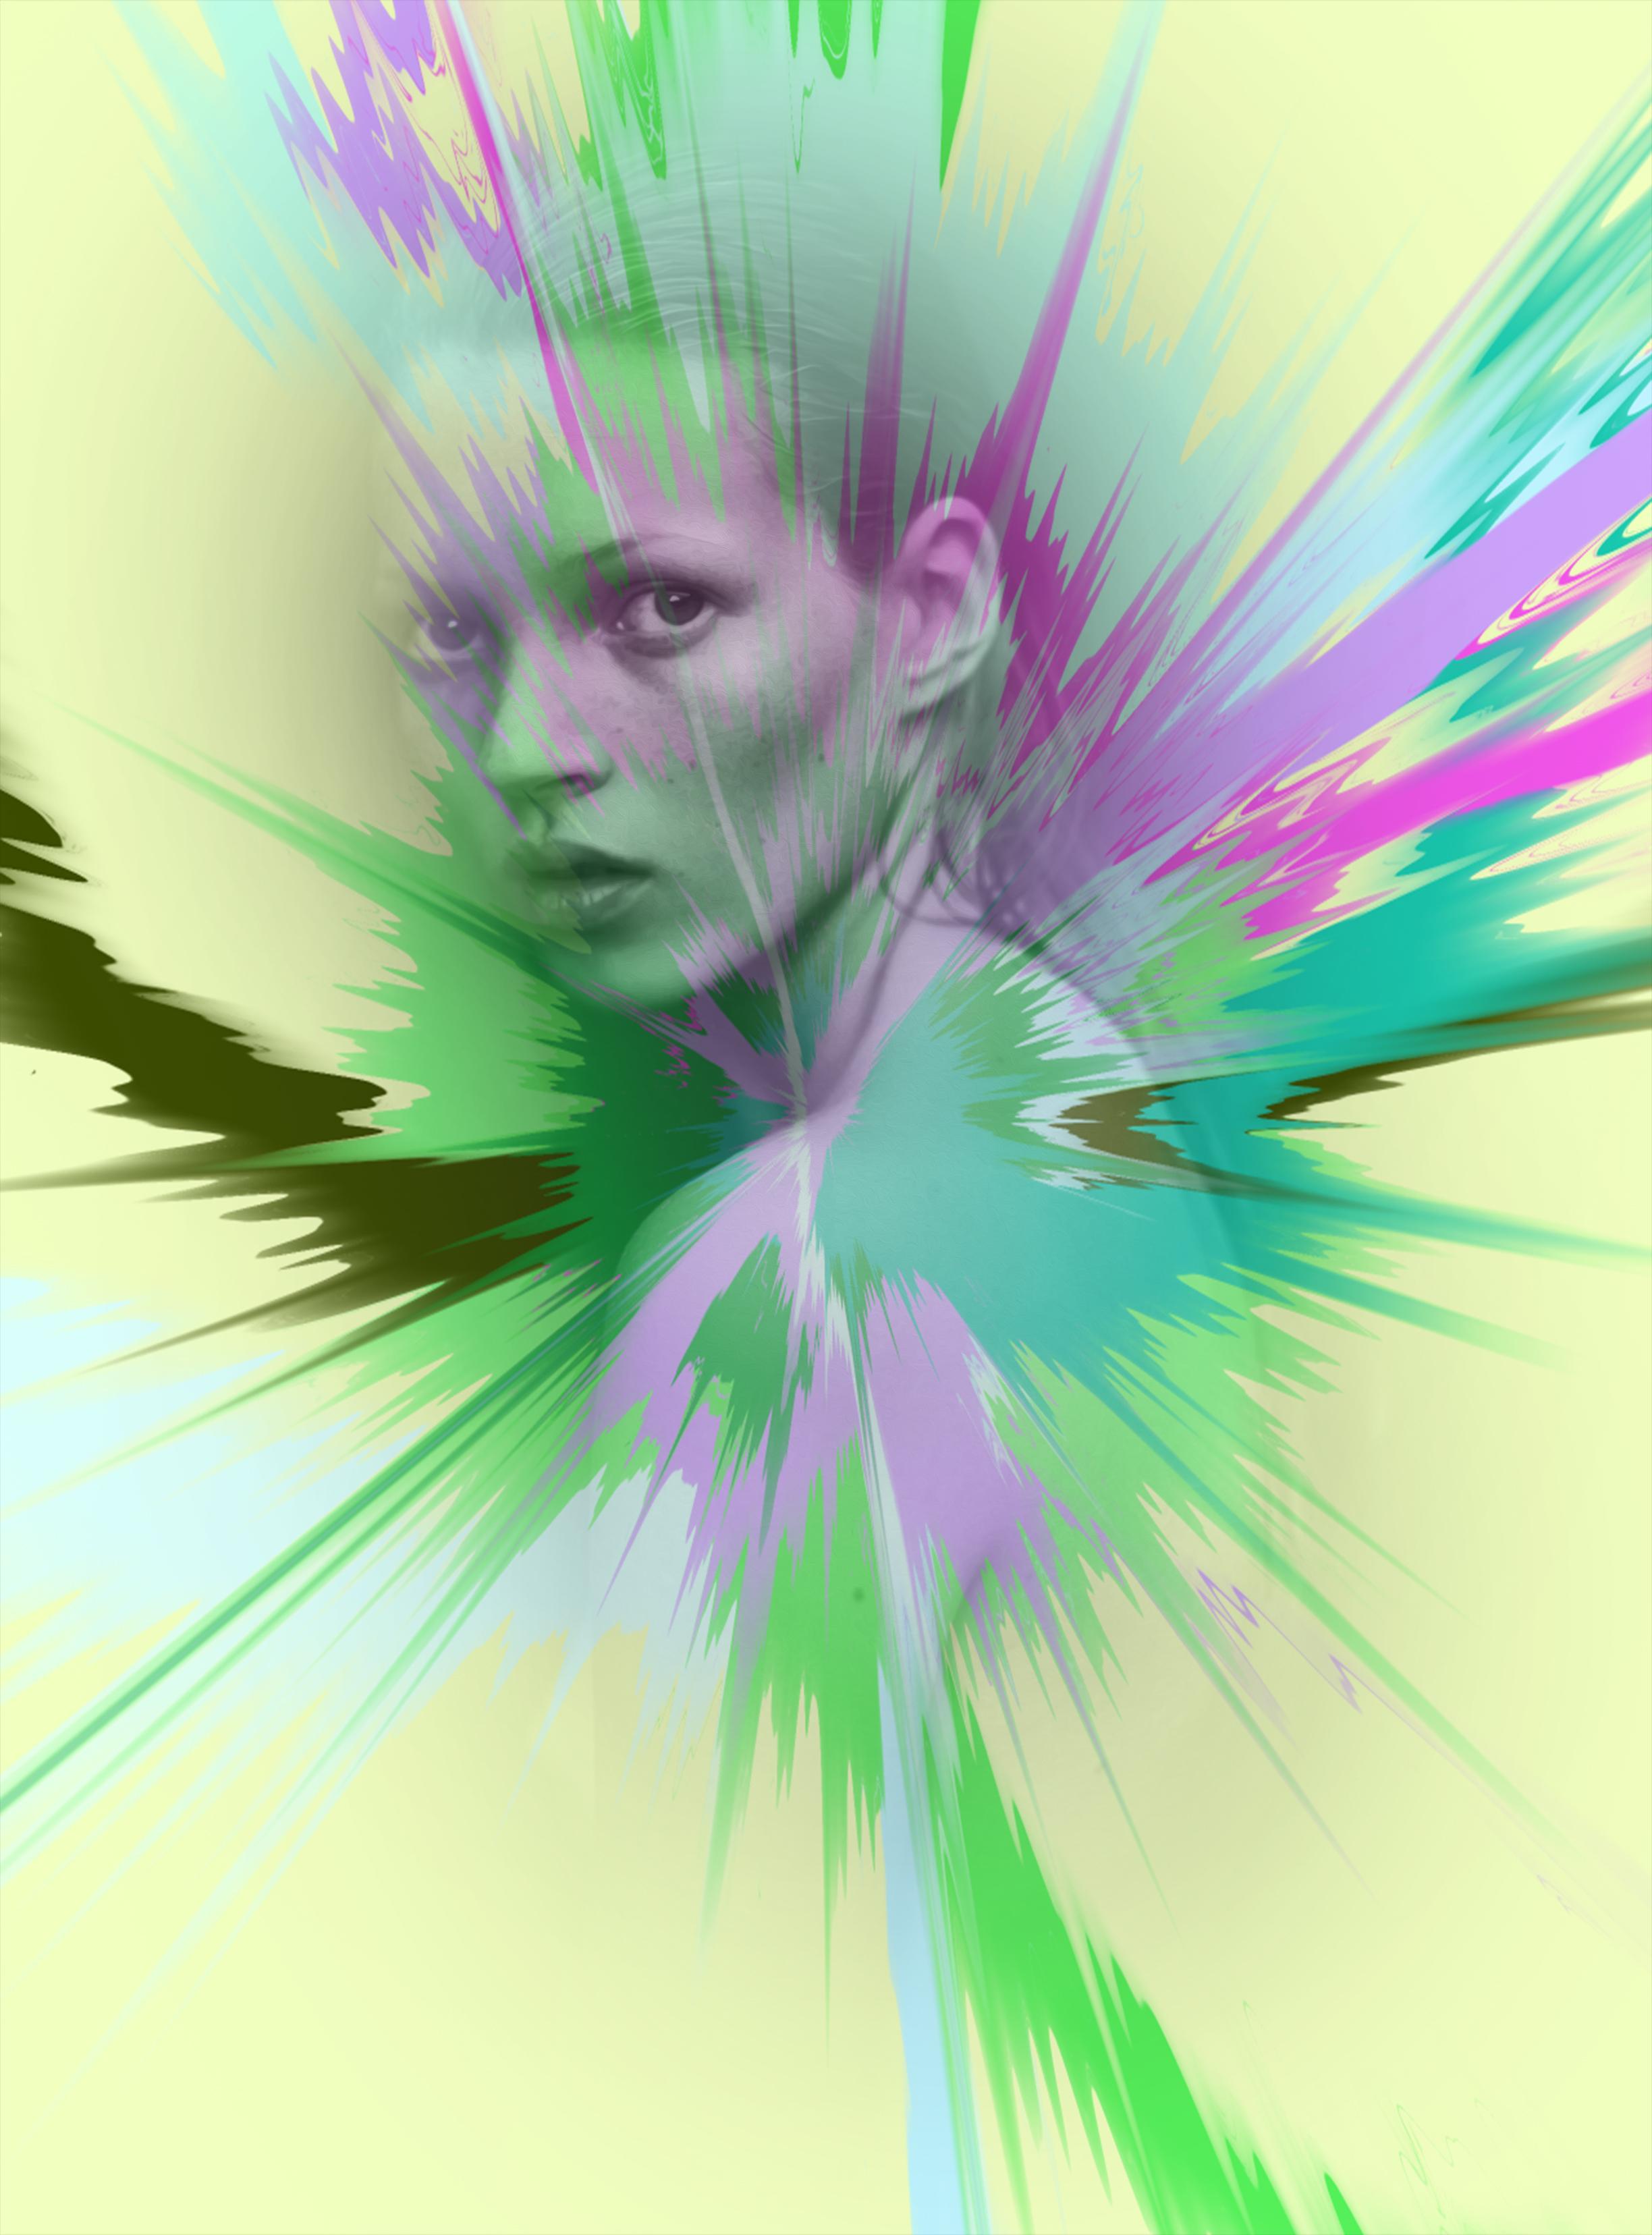 539 - Kate Moss vibrante de poussière de diamant - Mixed Media Art de Punk Me Tender